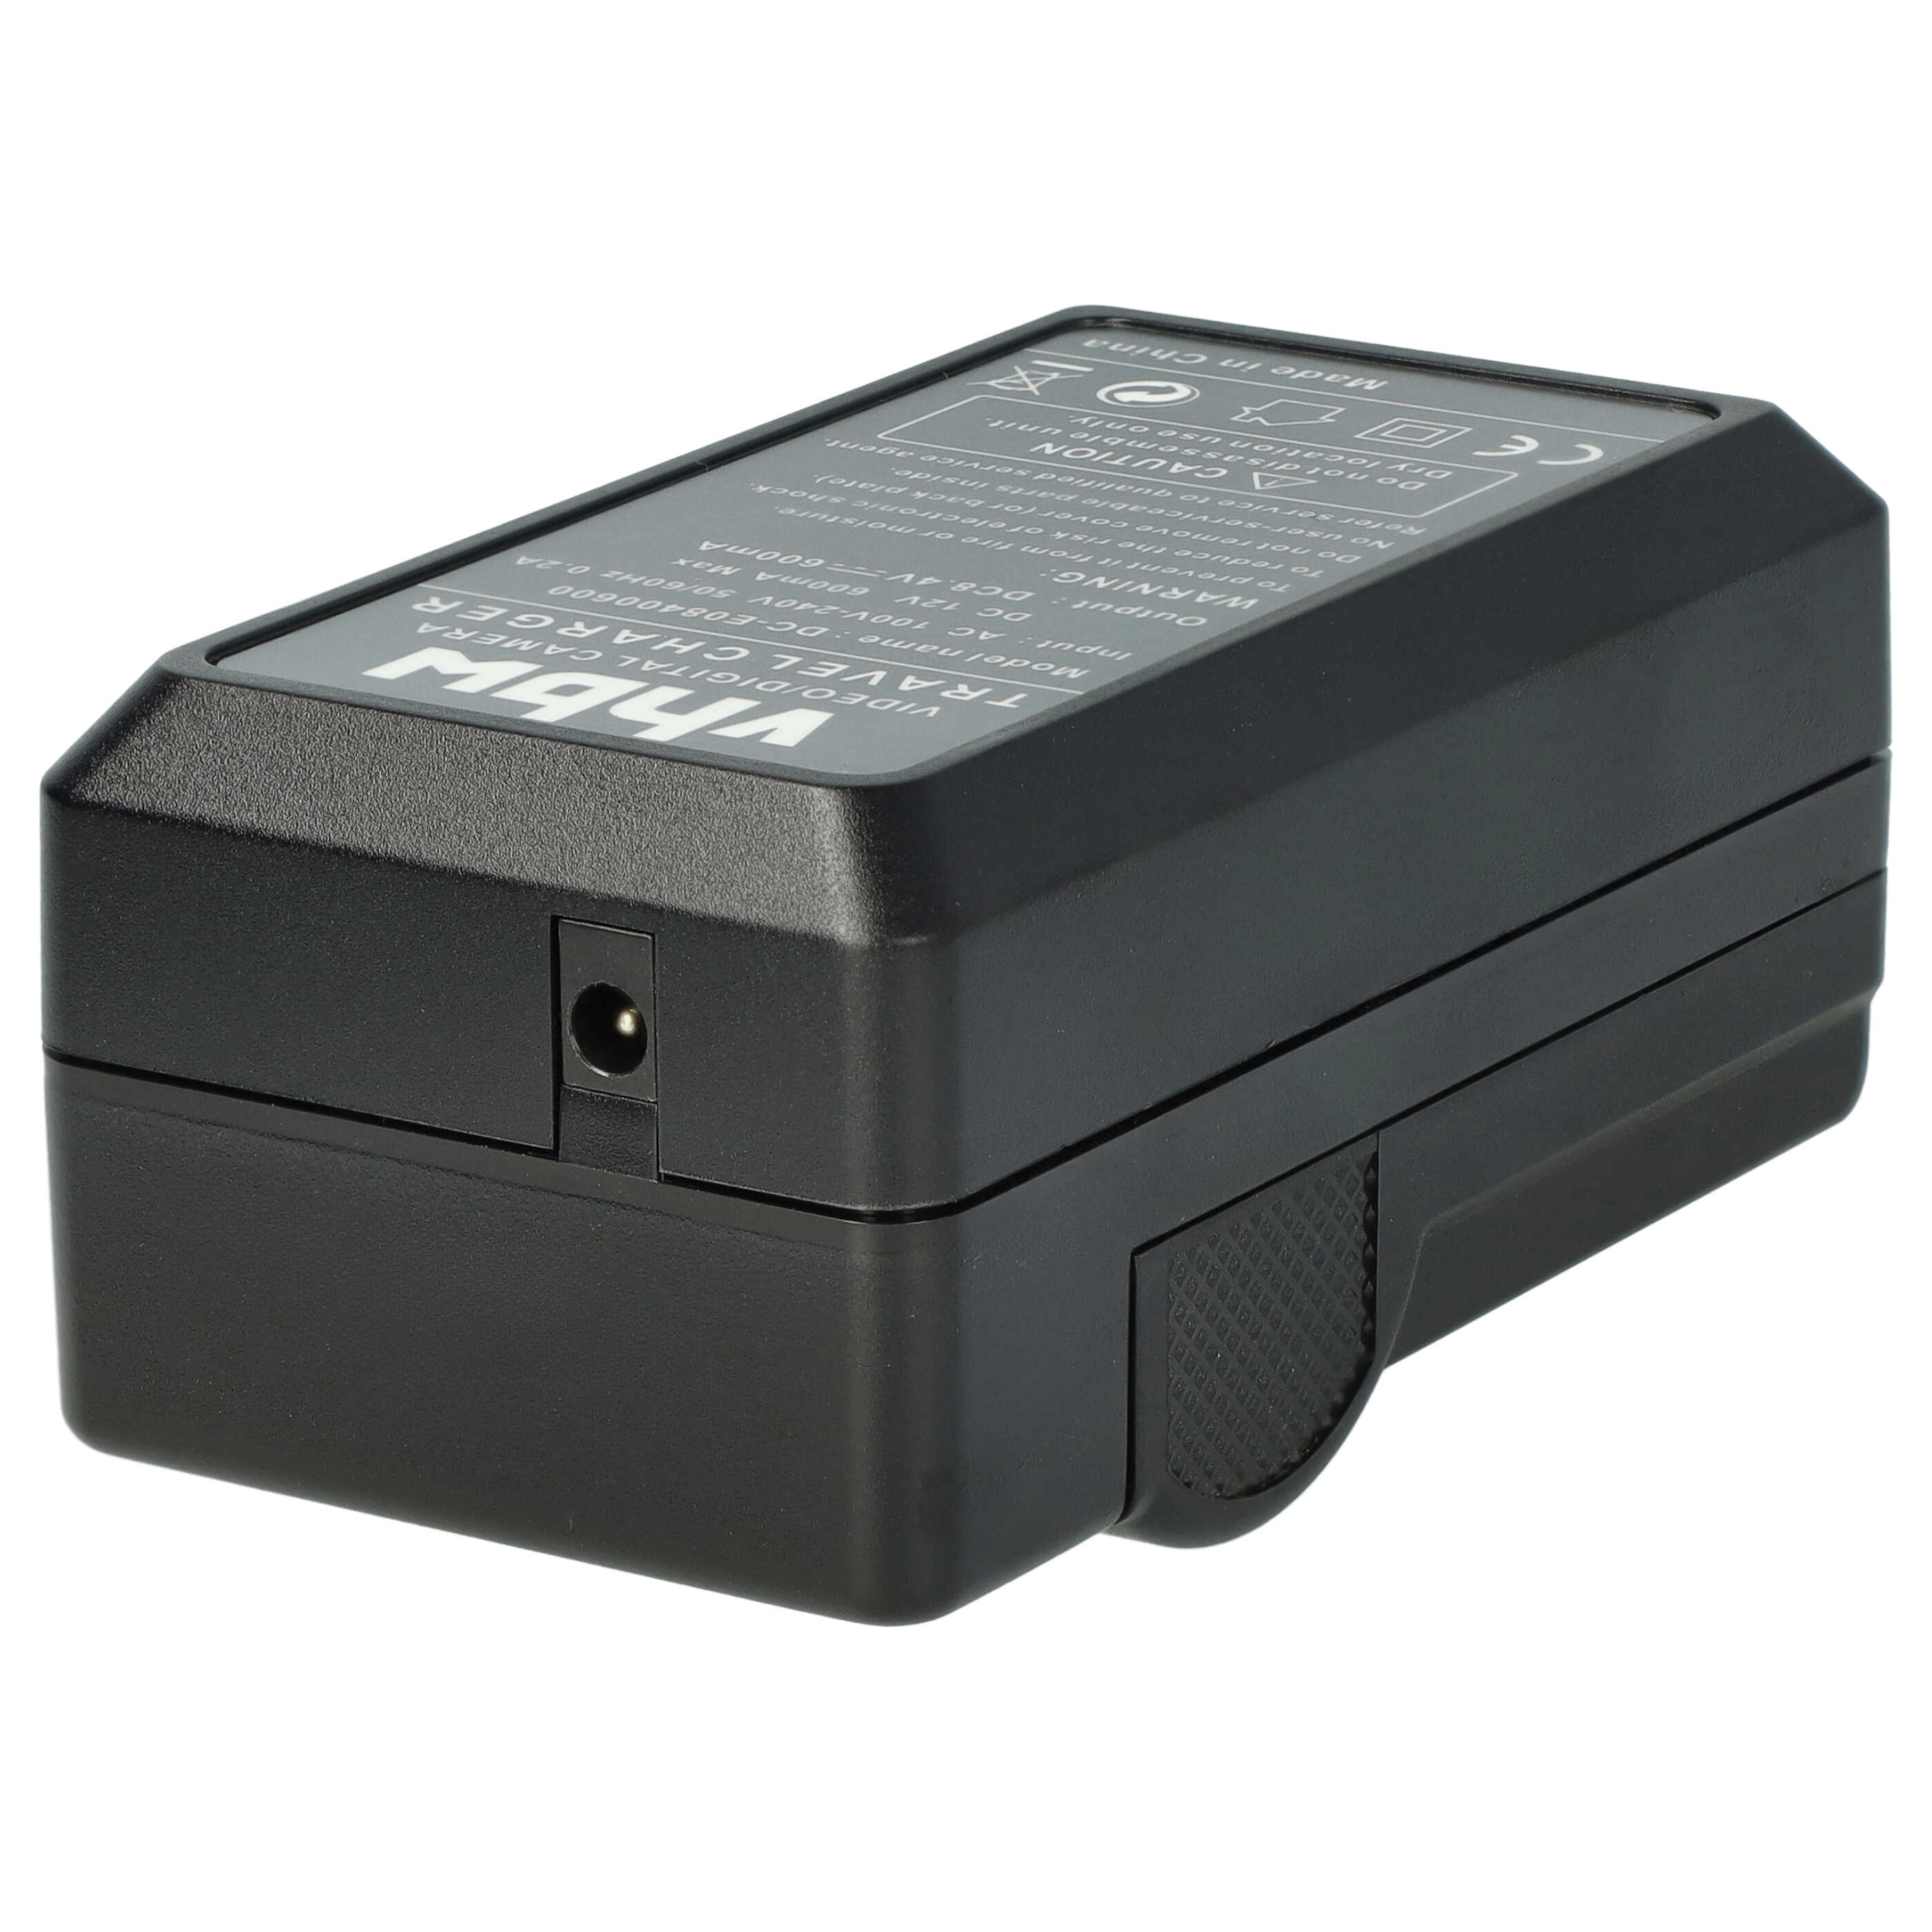 Akku Ladegerät passend für Lumix DMC-GF1 Kamera u.a. - 0,6 A, 8,4 V